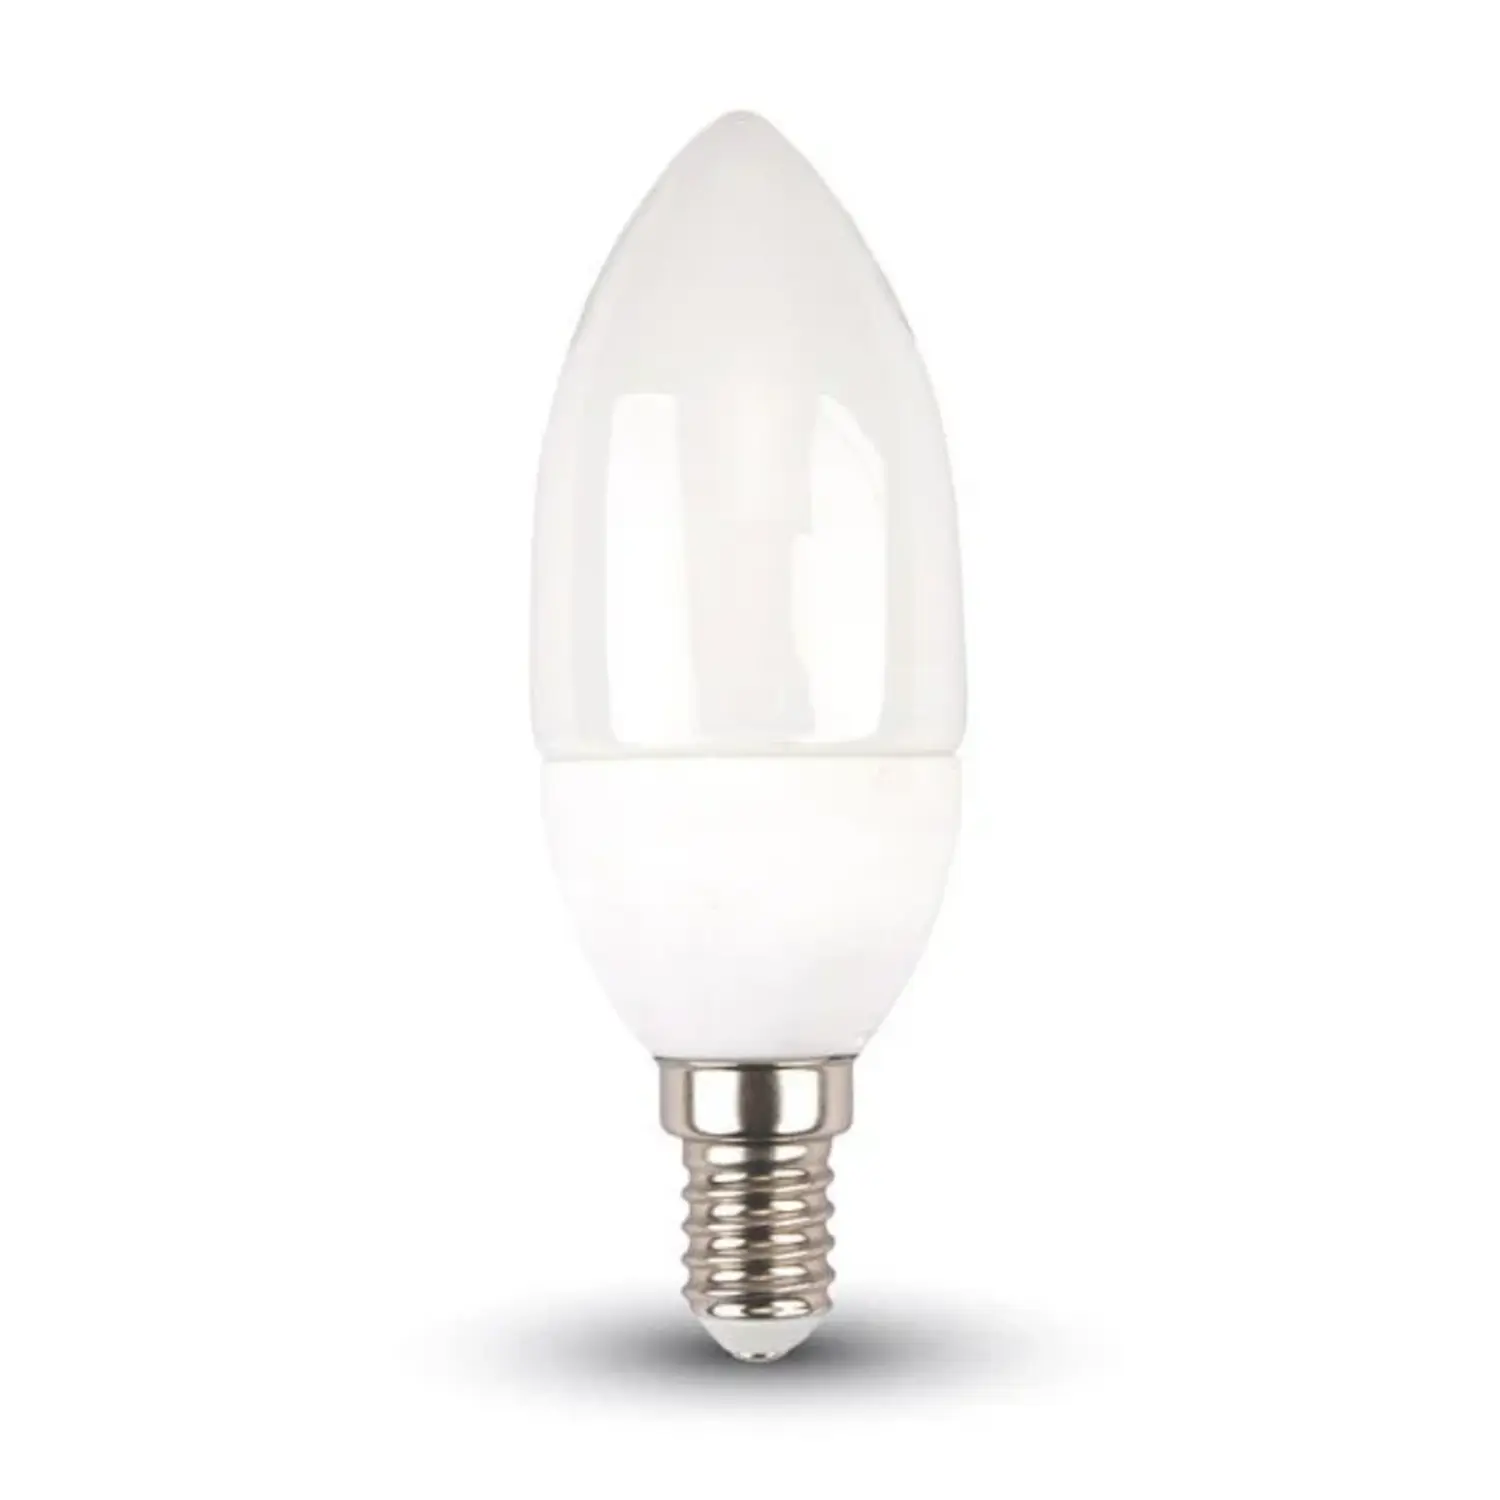 immagine del prodotto lampadina led candela oliva e14 5,50 watt bianco freddo